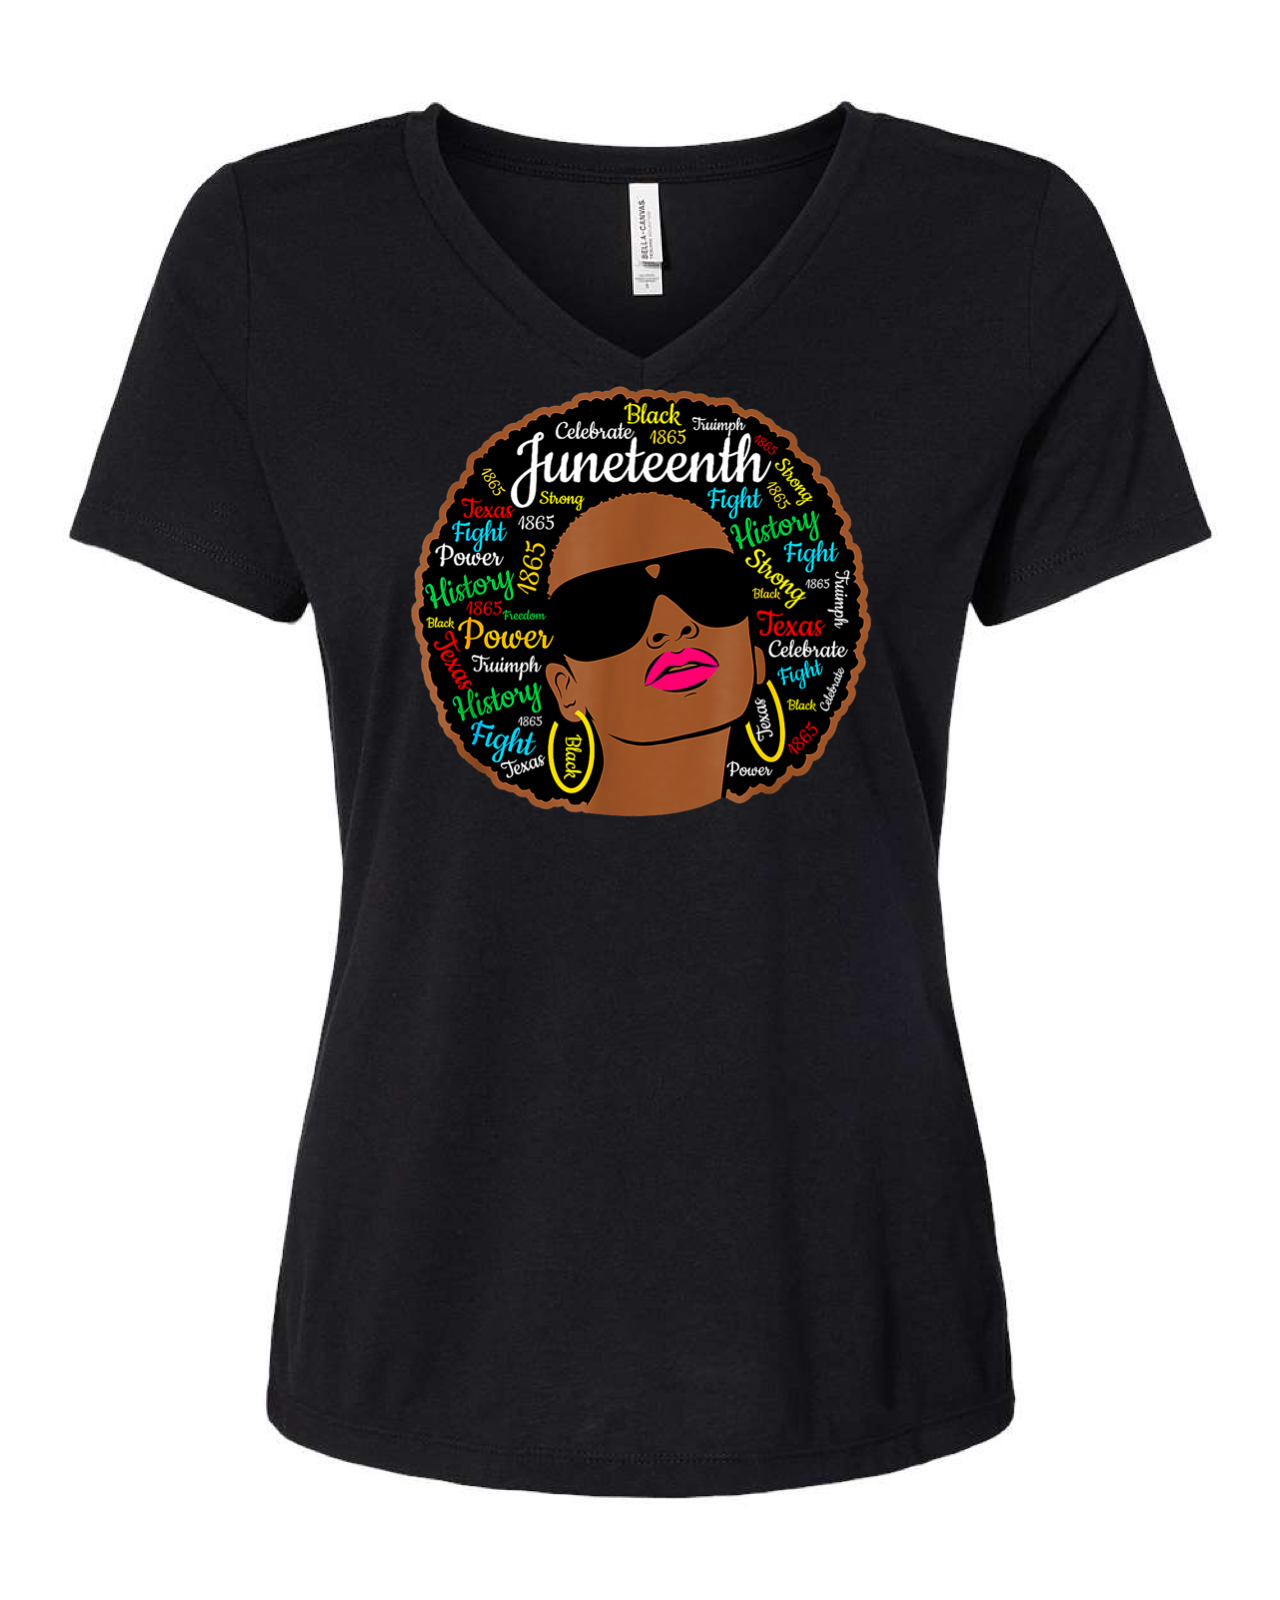 Juneteenth Afro shirt for Black Women